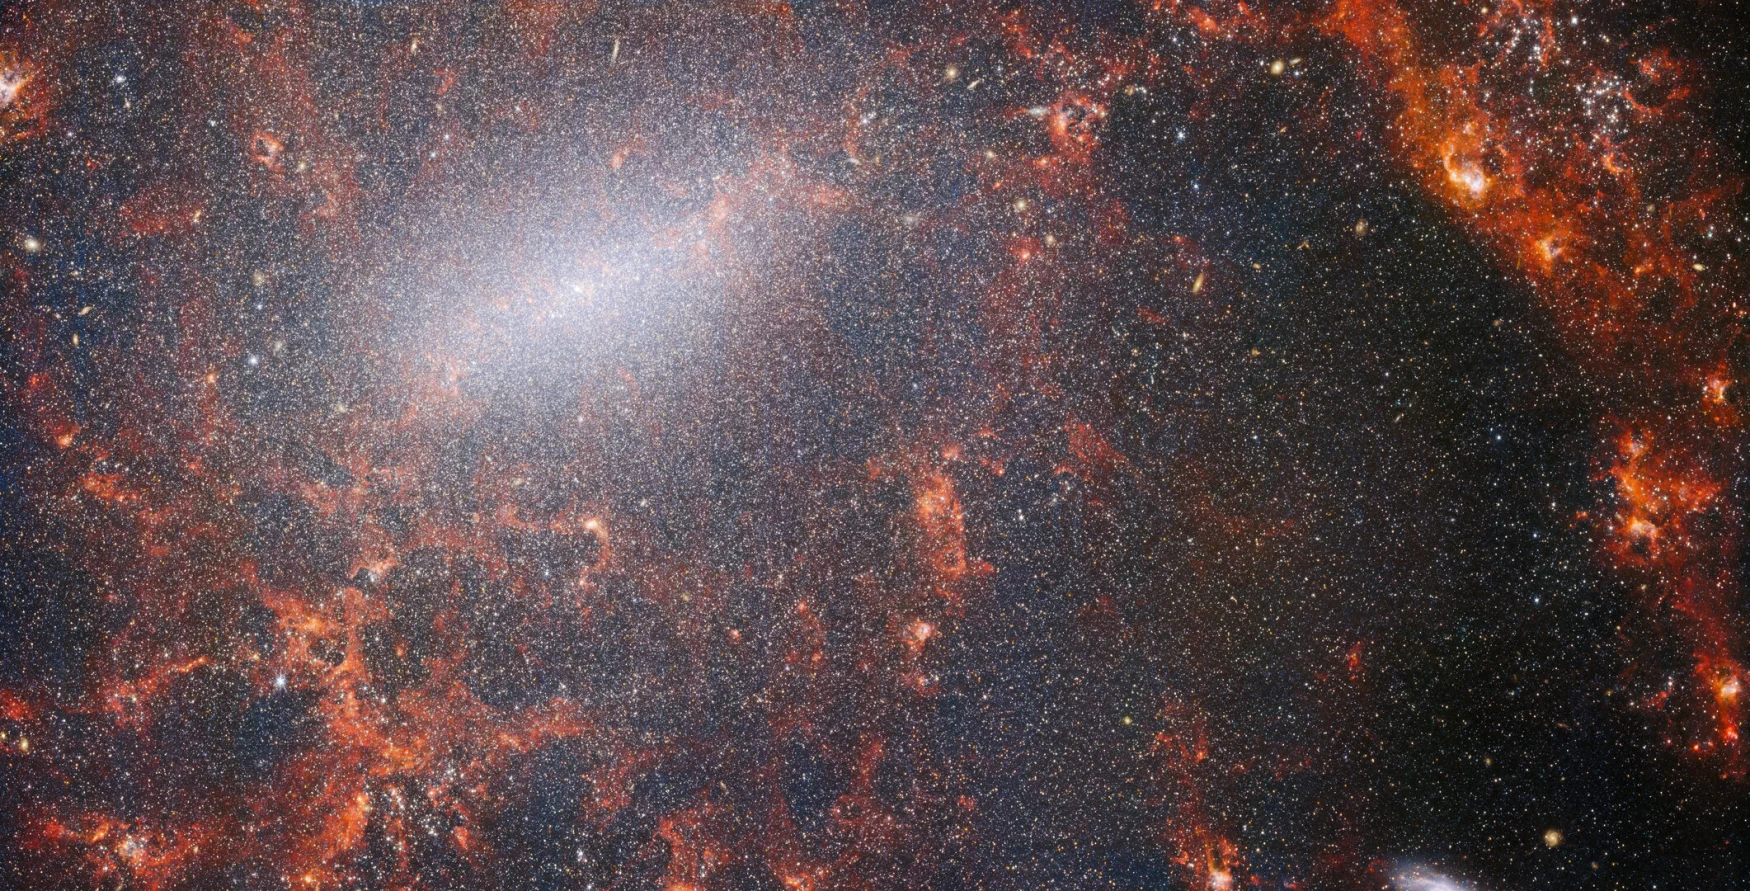 Filamen halus debu dan gugus bintang terang terlihat di gambar ini dari NASA/ESA/CSA James Webb Space Telescope.  Pemandangan dari instrumen NIRCam Webb ini bertabur gugus bintang masif galaksi, yang terpadat di sepanjang batang pusatnya yang terang, bersama dengan awan gas merah menyala yang diterangi oleh bintang-bintang muda di dalamnya.  Bintang-bintang yang berkelap-kelip ini milik galaksi spiral berpalang NGC 5068, yang terletak sekitar 17 juta tahun cahaya dari Bumi di konstelasi Virgo.  Gambar NGC 5068 ini adalah bagian dari kampanye untuk membuat harta karun astronomi, tempat penyimpanan pengamatan pembentukan bintang di galaksi terdekat.  Permata sebelumnya dari koleksi ini dapat dilihat di sini dan di sini.  Pengamatan ini sangat berharga bagi para astronom karena dua alasan.  Yang pertama adalah bahwa pembentukan bintang menopang banyak bidang dalam astronomi, mulai dari fisika plasma antarbintang yang lemah hingga evolusi seluruh galaksi.  Dengan mengamati pembentukan bintang di galaksi terdekat, para astronom berharap dapat memulai kemajuan ilmiah besar dengan beberapa data pertama yang tersedia dari Webb.  Alasan kedua adalah pengamatan Webb didasarkan pada penelitian lain yang menggunakan teleskop termasuk NASA/ESA Hubble Space Telescope dan beberapa observatorium berbasis darat yang paling mampu di dunia.  Webb mengumpulkan gambar dari 19 galaksi pembentuk bintang terdekat, yang kemudian dapat digabungkan oleh para astronom dengan katalog 10.000 gugus bintang Hubble, memetakan secara spektral 20.000 nebula emisi bintang dari Very Large Telescope (VLT), dan mengamati 12.000 dari nebula gelap.  , awan molekuler padat yang diidentifikasi oleh Atacama Large Millimeter/Submillimeter Array (ALMA).  Pengamatan ini menjangkau spektrum elektromagnetik dan memberi para astronom kesempatan yang belum pernah terjadi sebelumnya untuk menyatukan detail pembentukan bintang.  Gambar galaksi inframerah-dekat ini dipenuhi dengan gugusan besar bintang kuno yang membentuk inti dari NGC 5068. Pandangan tajam NIRCam memungkinkan para astronom mengintip melalui gas dan debu galaksi untuk memeriksa bintang-bintangnya lebih dekat.  Di sepanjang jalur lengan spiral terdapat awan debu yang padat dan cerah: ini adalah daerah H II, gugusan gas hidrogen tempat bintang baru terbentuk.  Bintang aktif dan energik mengionisasi hidrogen di sekitar mereka, yang bila dikombinasikan dengan emisi debu panas, menghasilkan cahaya kemerahan.  Wilayah H II menjadi target yang bagus bagi para astronom, dan instrumen Webb adalah alat yang sempurna untuk memeriksanya, menghasilkan gambar ini. [Image Description: A close-in image of a spiral galaxy, showing its core and part of a spiral arm. At this distance thousands upon thousands of tiny stars that make up the galaxy can be seen. The stars are most dense in a whitish bar that forms the core, and less dense out from that towards the arm. Bright red gas clouds follow the twist of the galaxy and the spiral arm.] Tautan NGC 5068 (NIRCam + Gambar MIRI) 